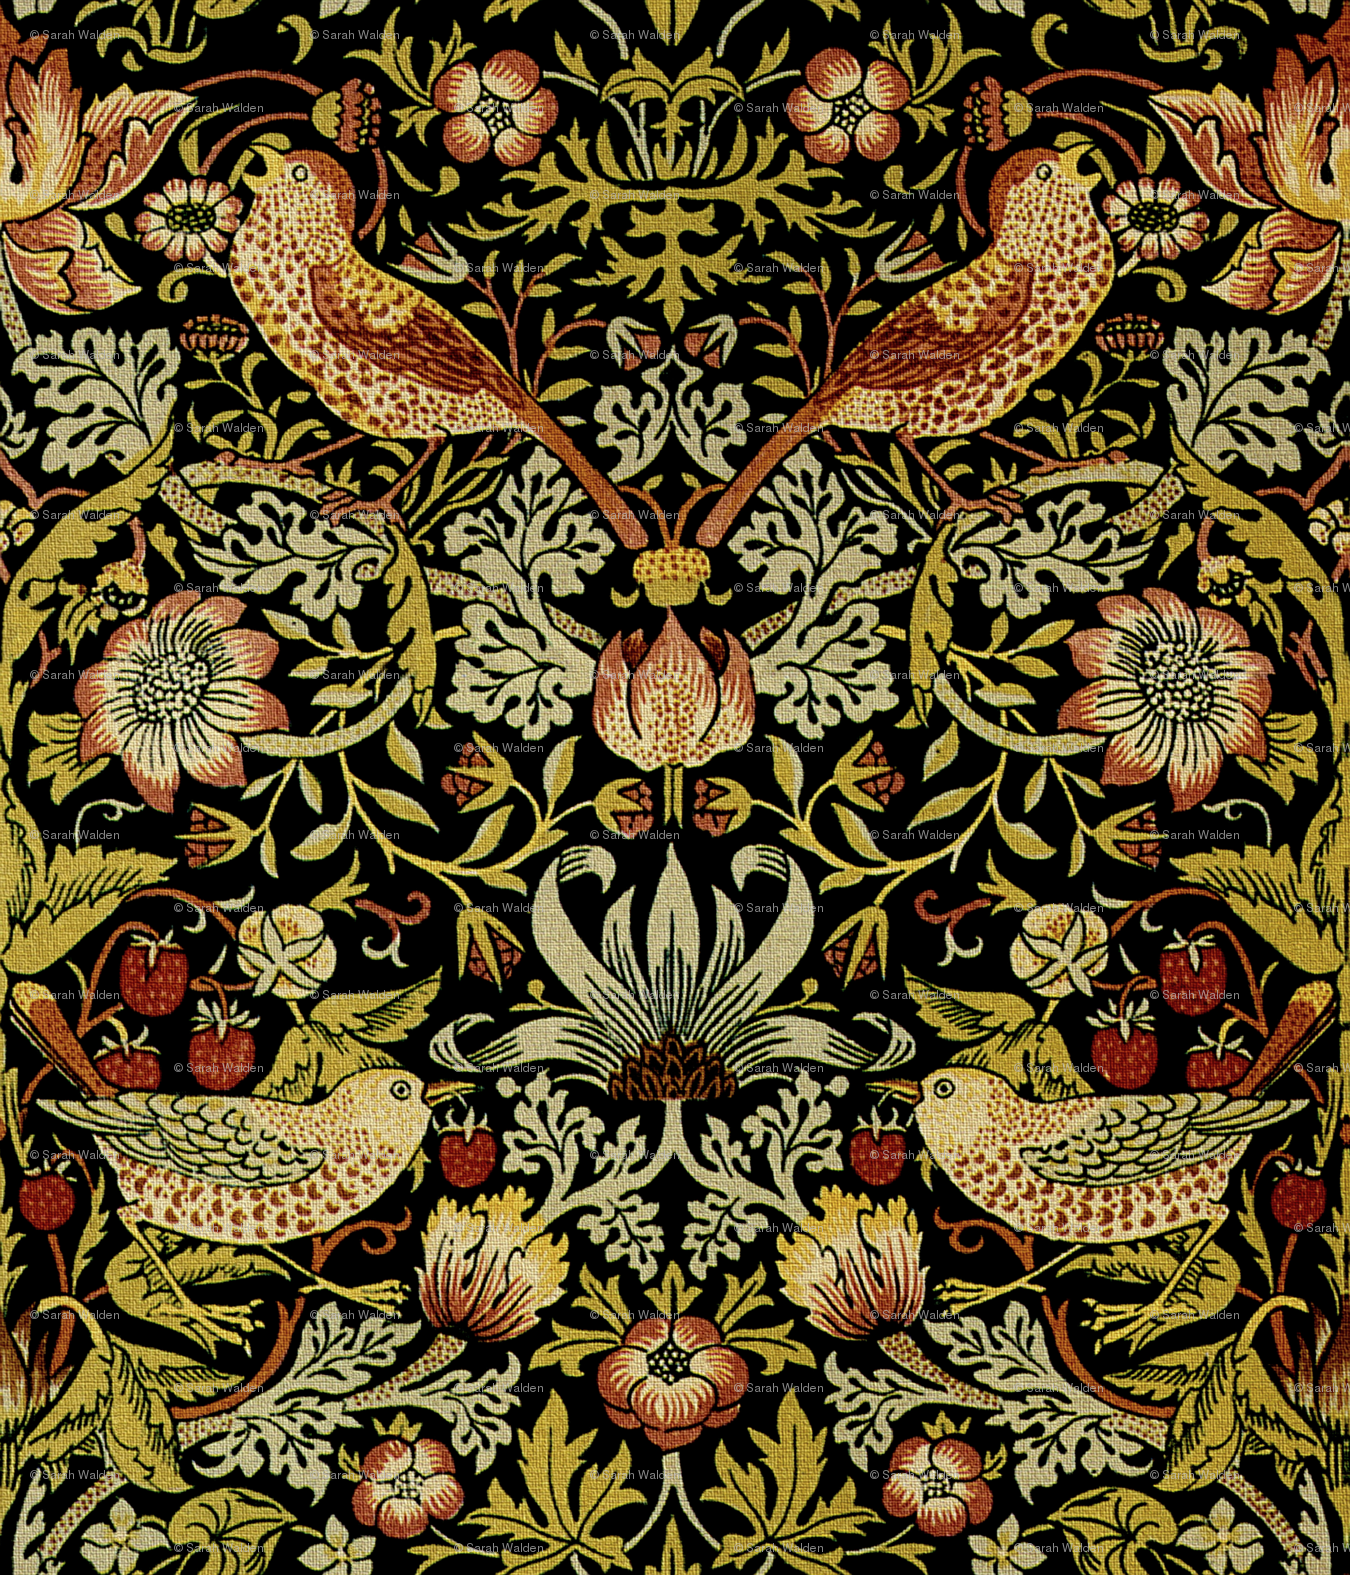 ウィリアム・モリス壁紙デザイン,パターン,アート,タペストリー,繊維,対称